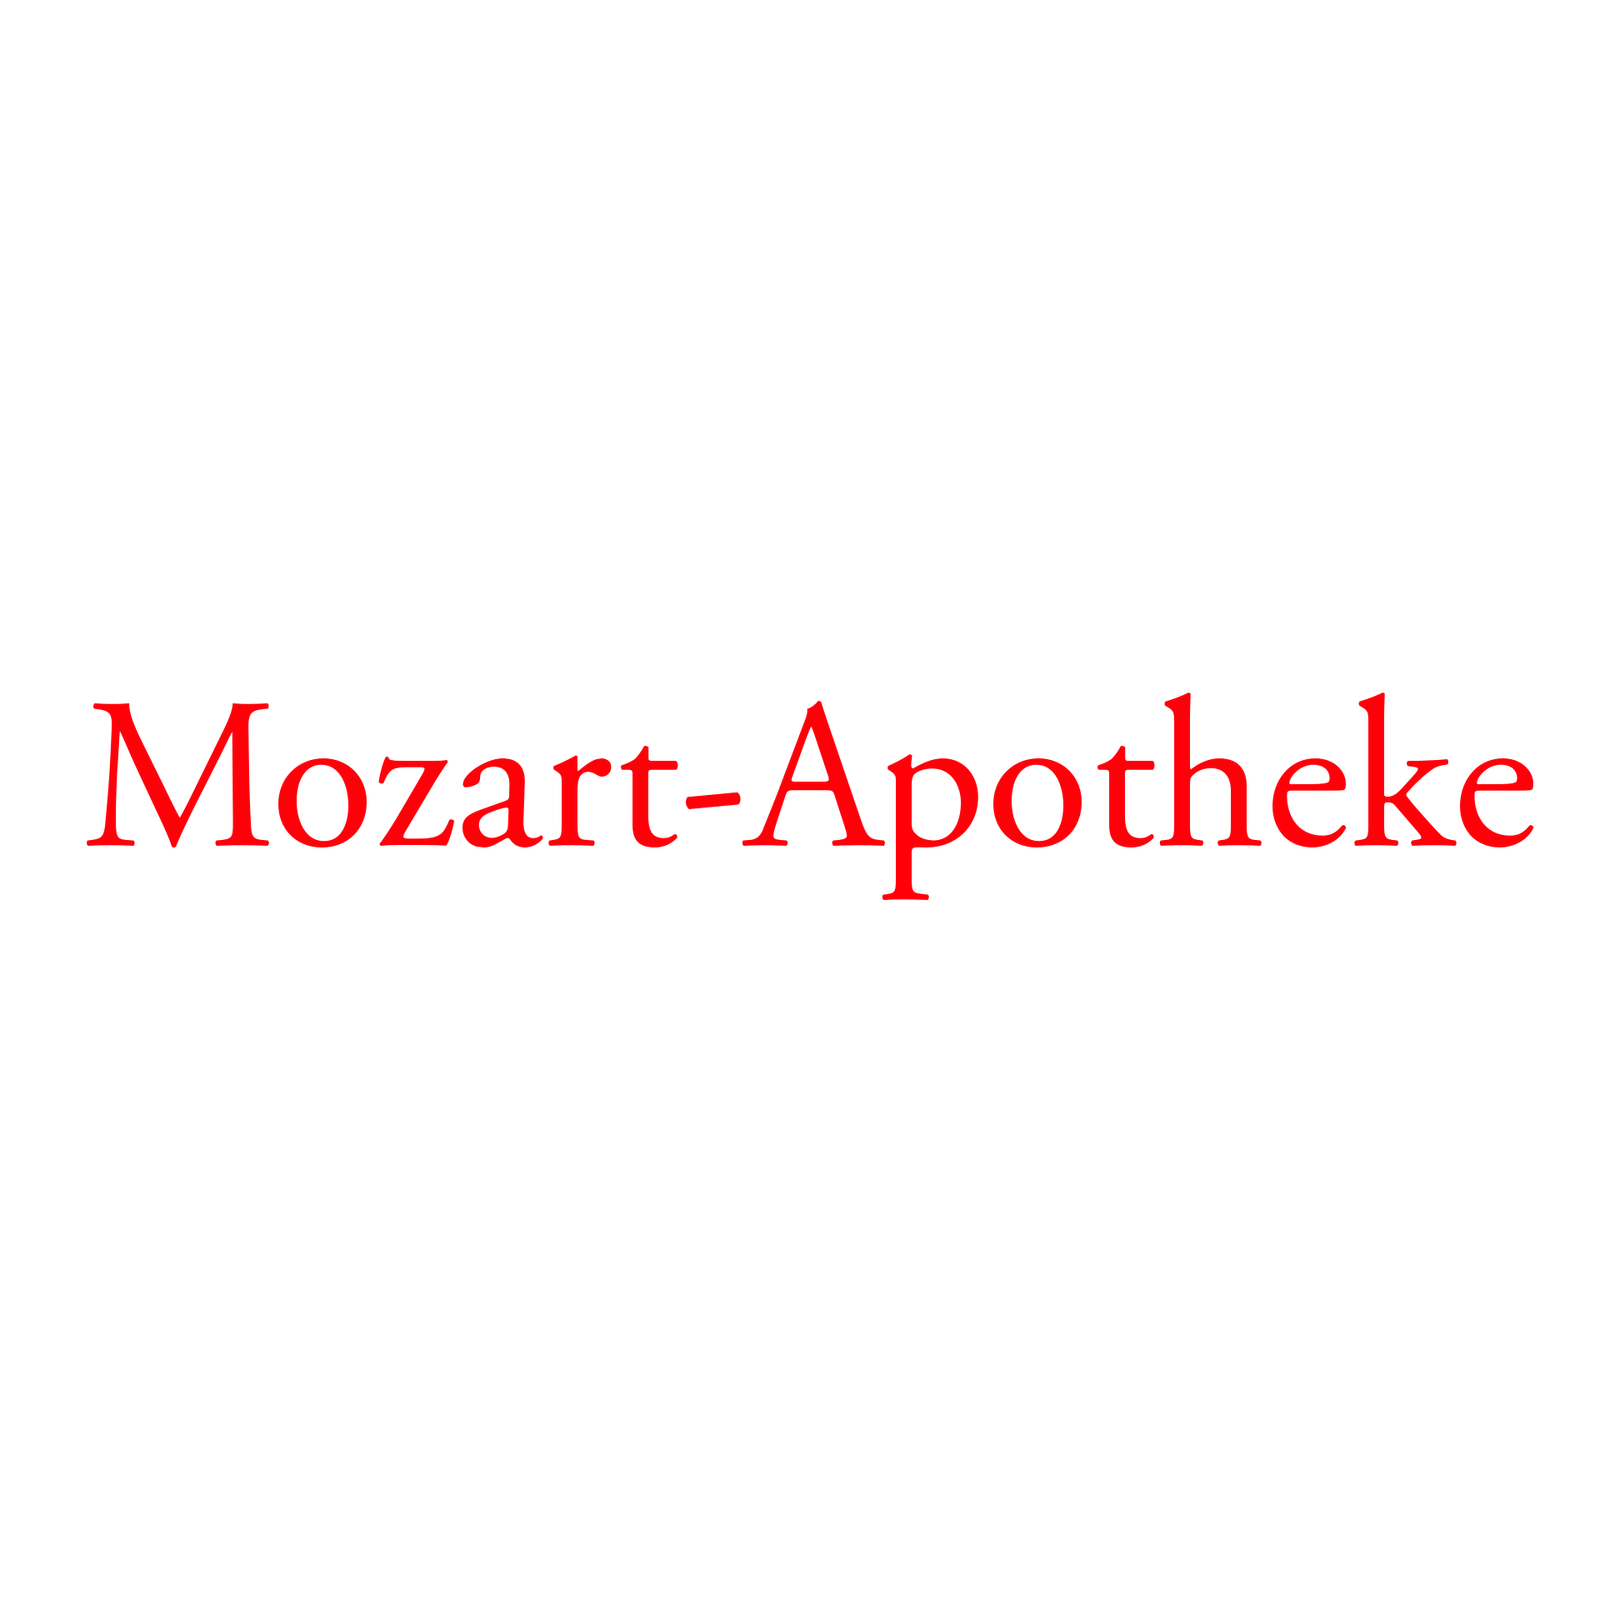 Mozart-Apotheke  